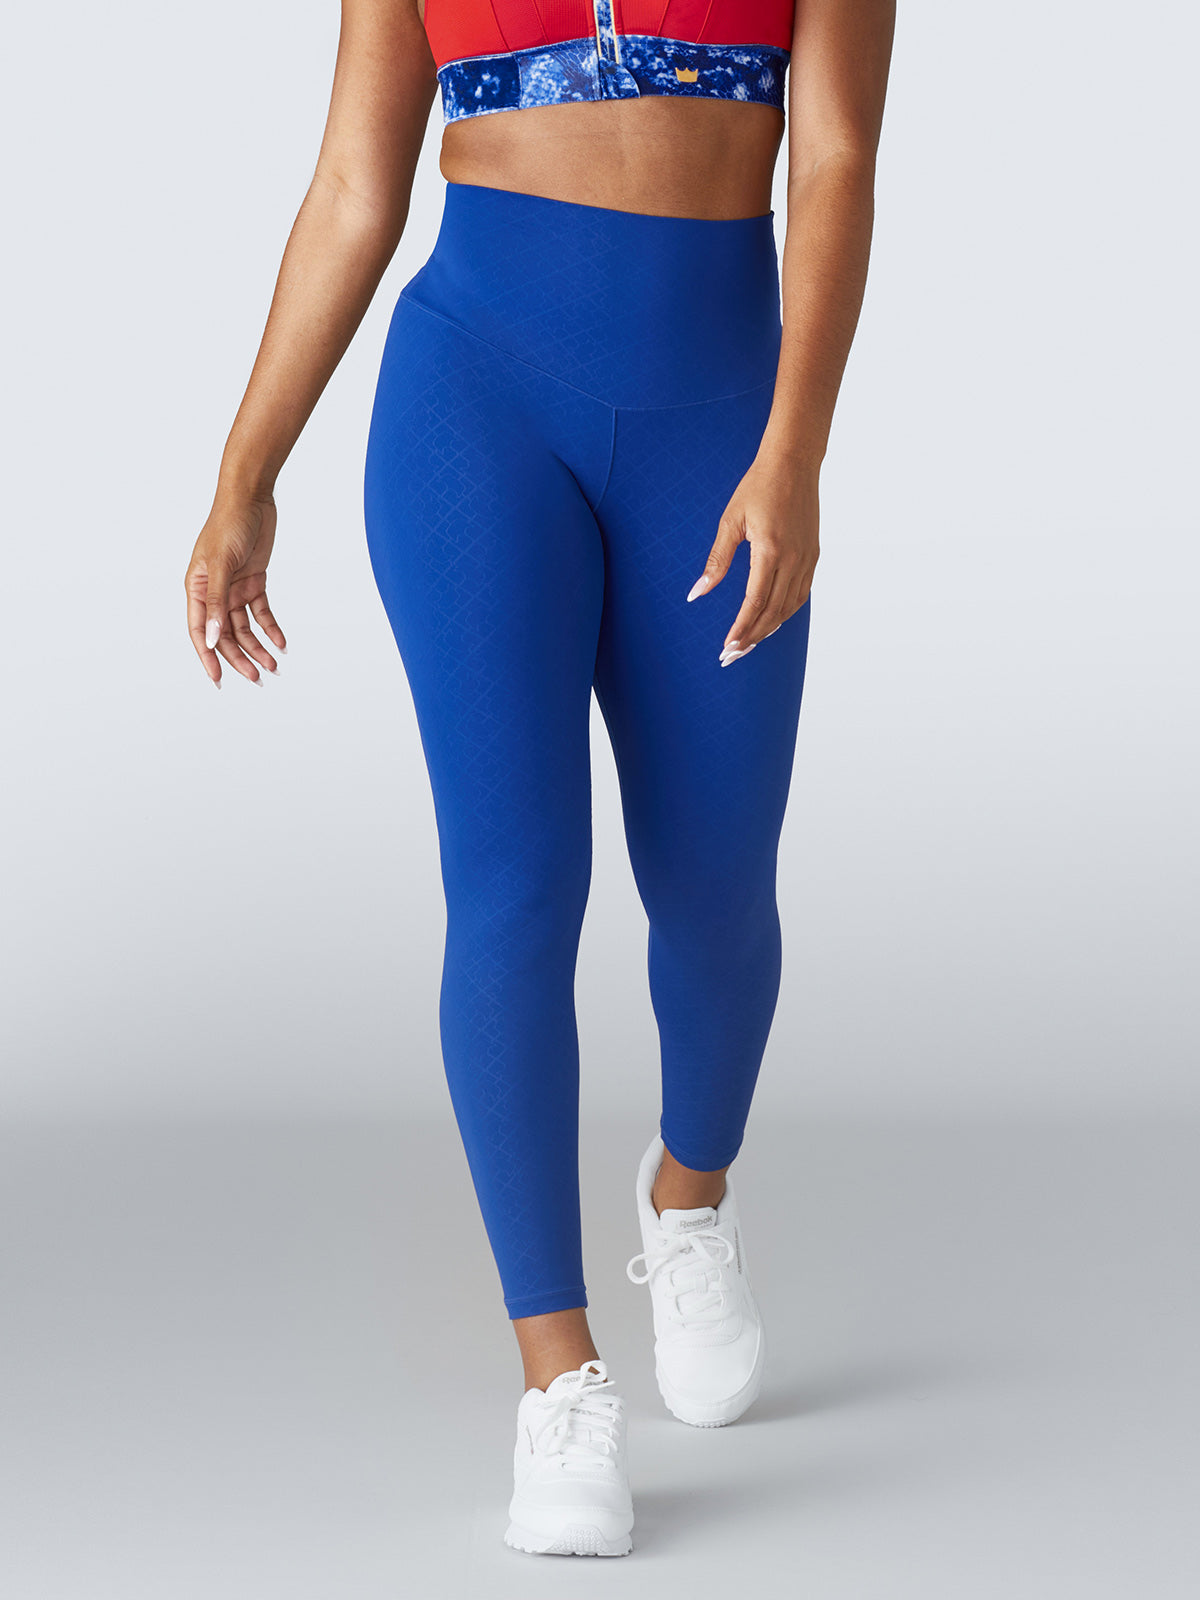 Pop fit women's blue and black leggings size M – Solé Resale Boutique